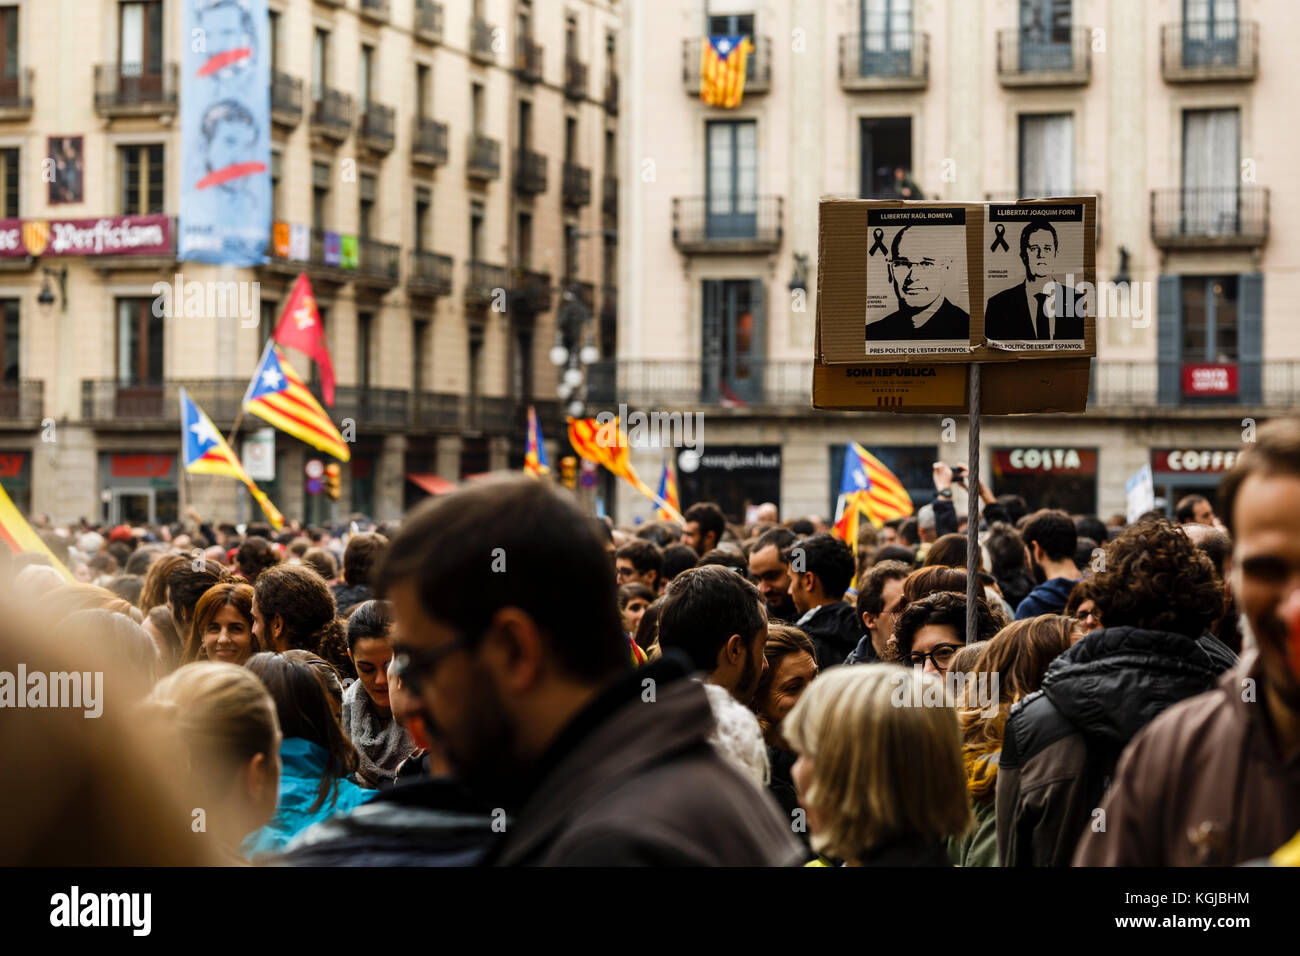 8 de noviembre de 2017 - Barcelona, Barcelona, España - Protesters que piden libertad a los presos políticos durante la concentración en la Plaza de Sant Jaume, Barcelona crédito: Joan Gosa Badia/Alamy Foto de stock